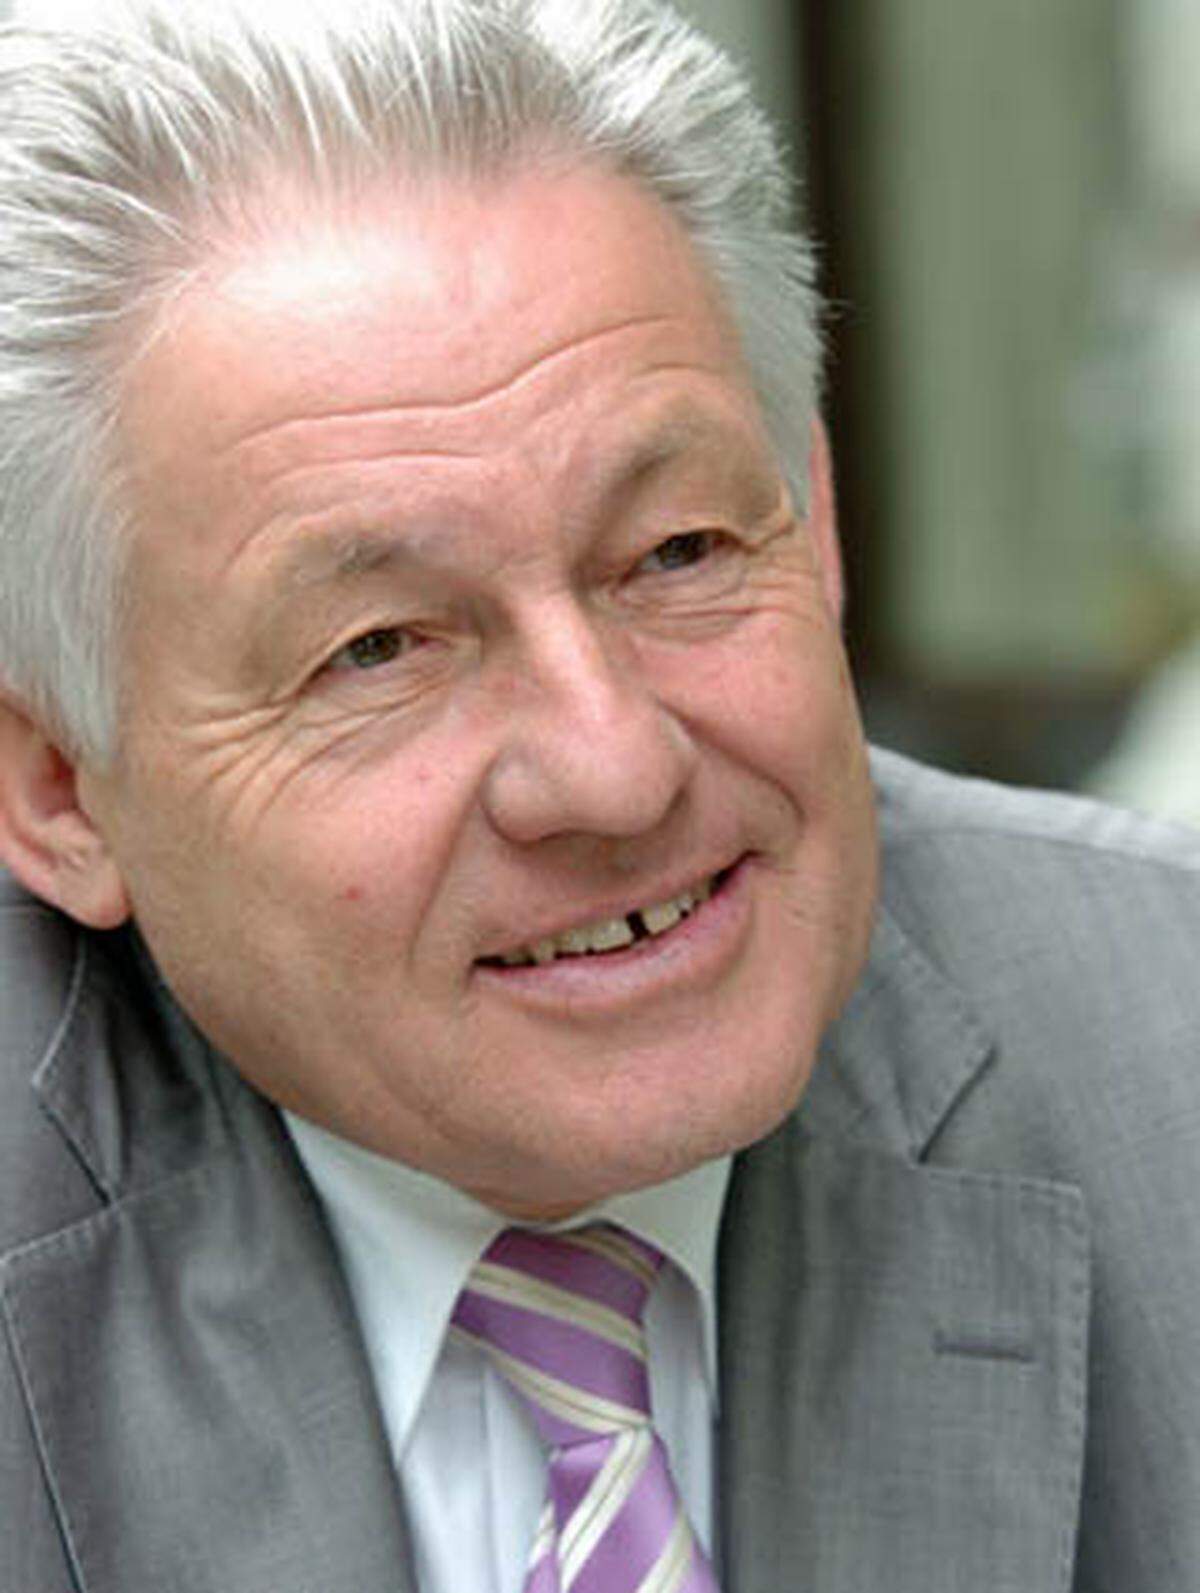 Pühringer wurde am 30. Oktober 1949 in Linz geboren. Schon sein Vater, ein Schneidermeister, war fast 20 Jahre lang in der Gemeindepolitik tätig. Pühringer selbst startete seine politische Karriere bei der Jungen ÖVP.